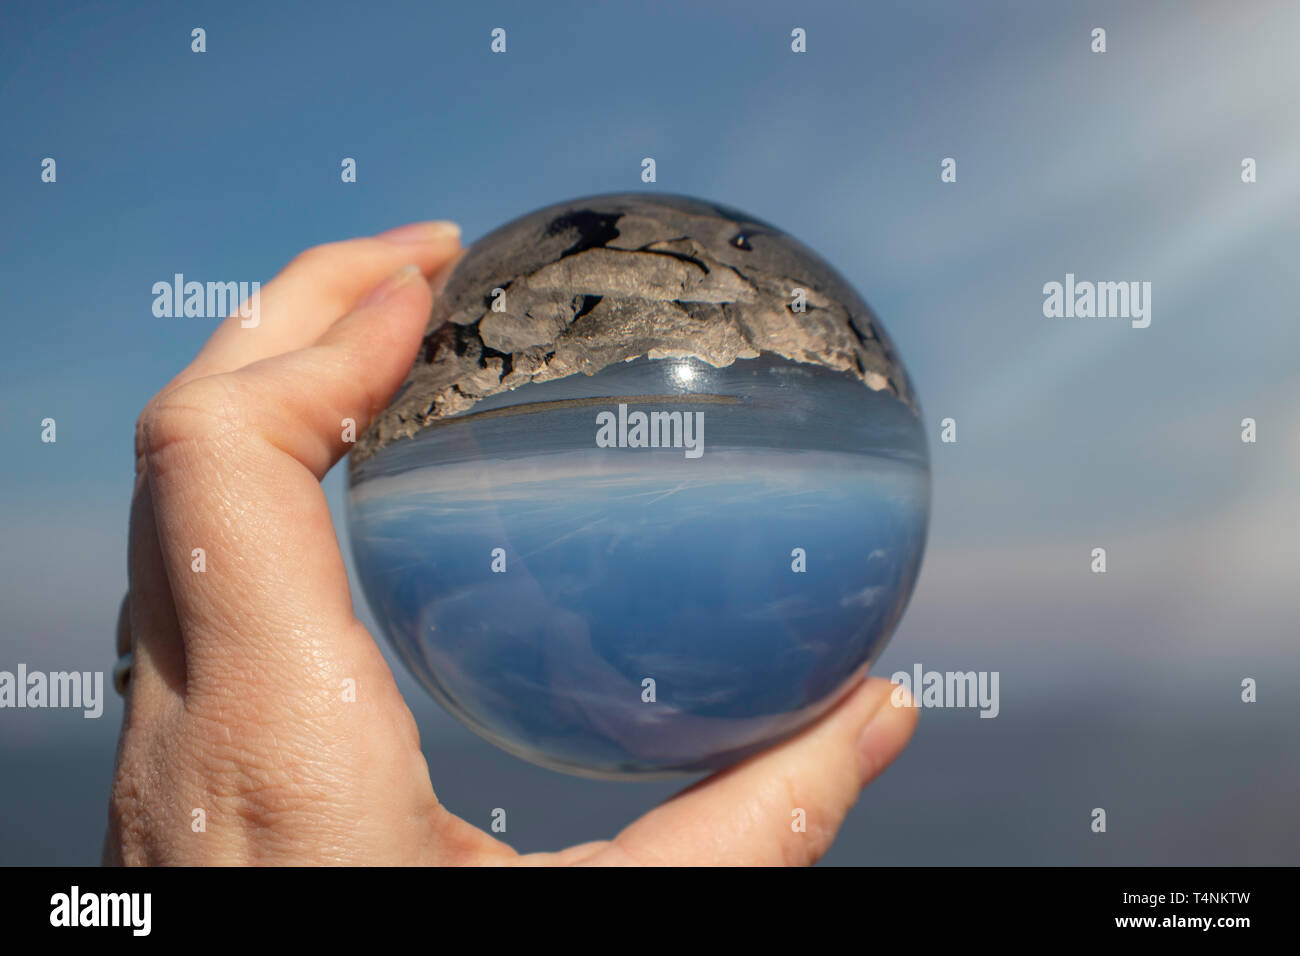 La baie de Morecambe, Lancashire UK, comme le montre la photographie à travers un cristal ballon tenu dans une main féminine - Photographie, seascape Banque D'Images